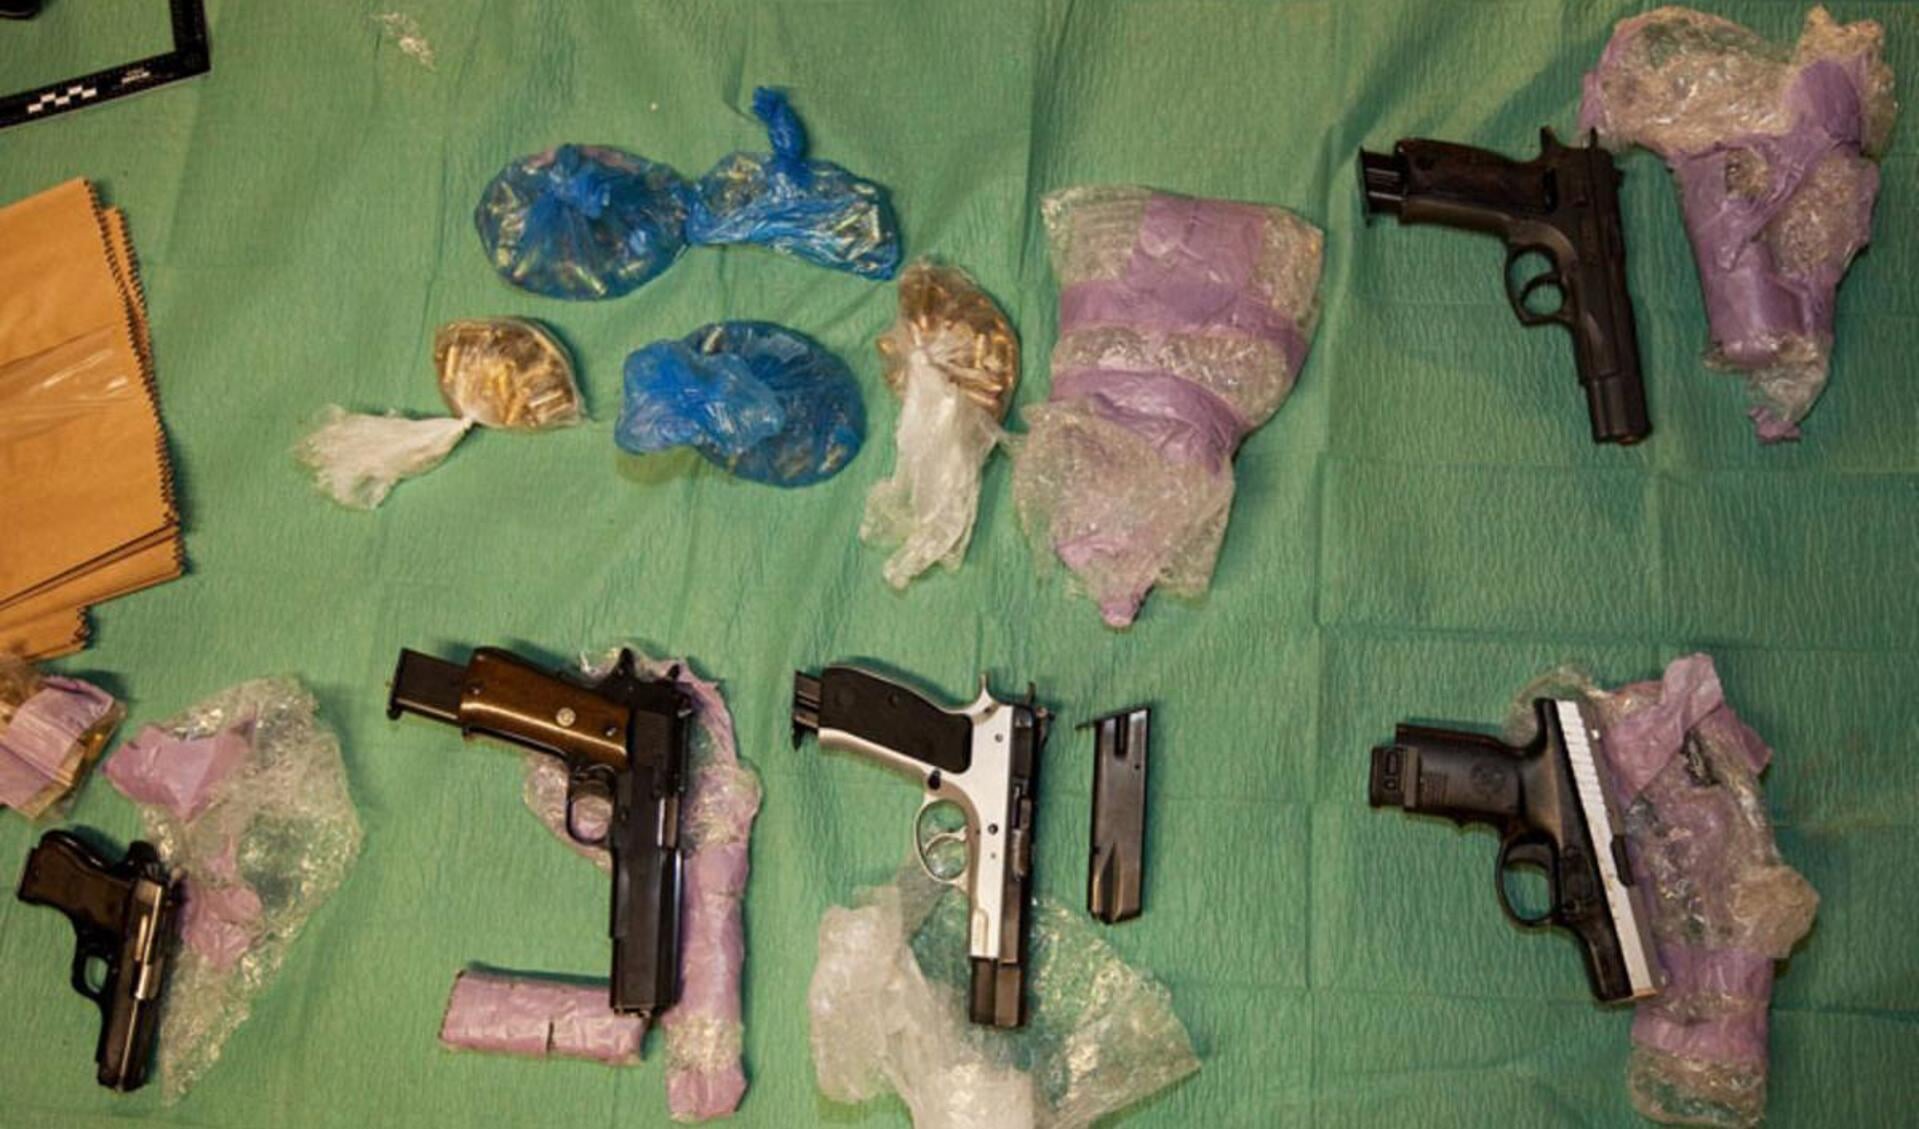 Megavondst drugs en wapens bij growshop. foto Openbaar Ministerie